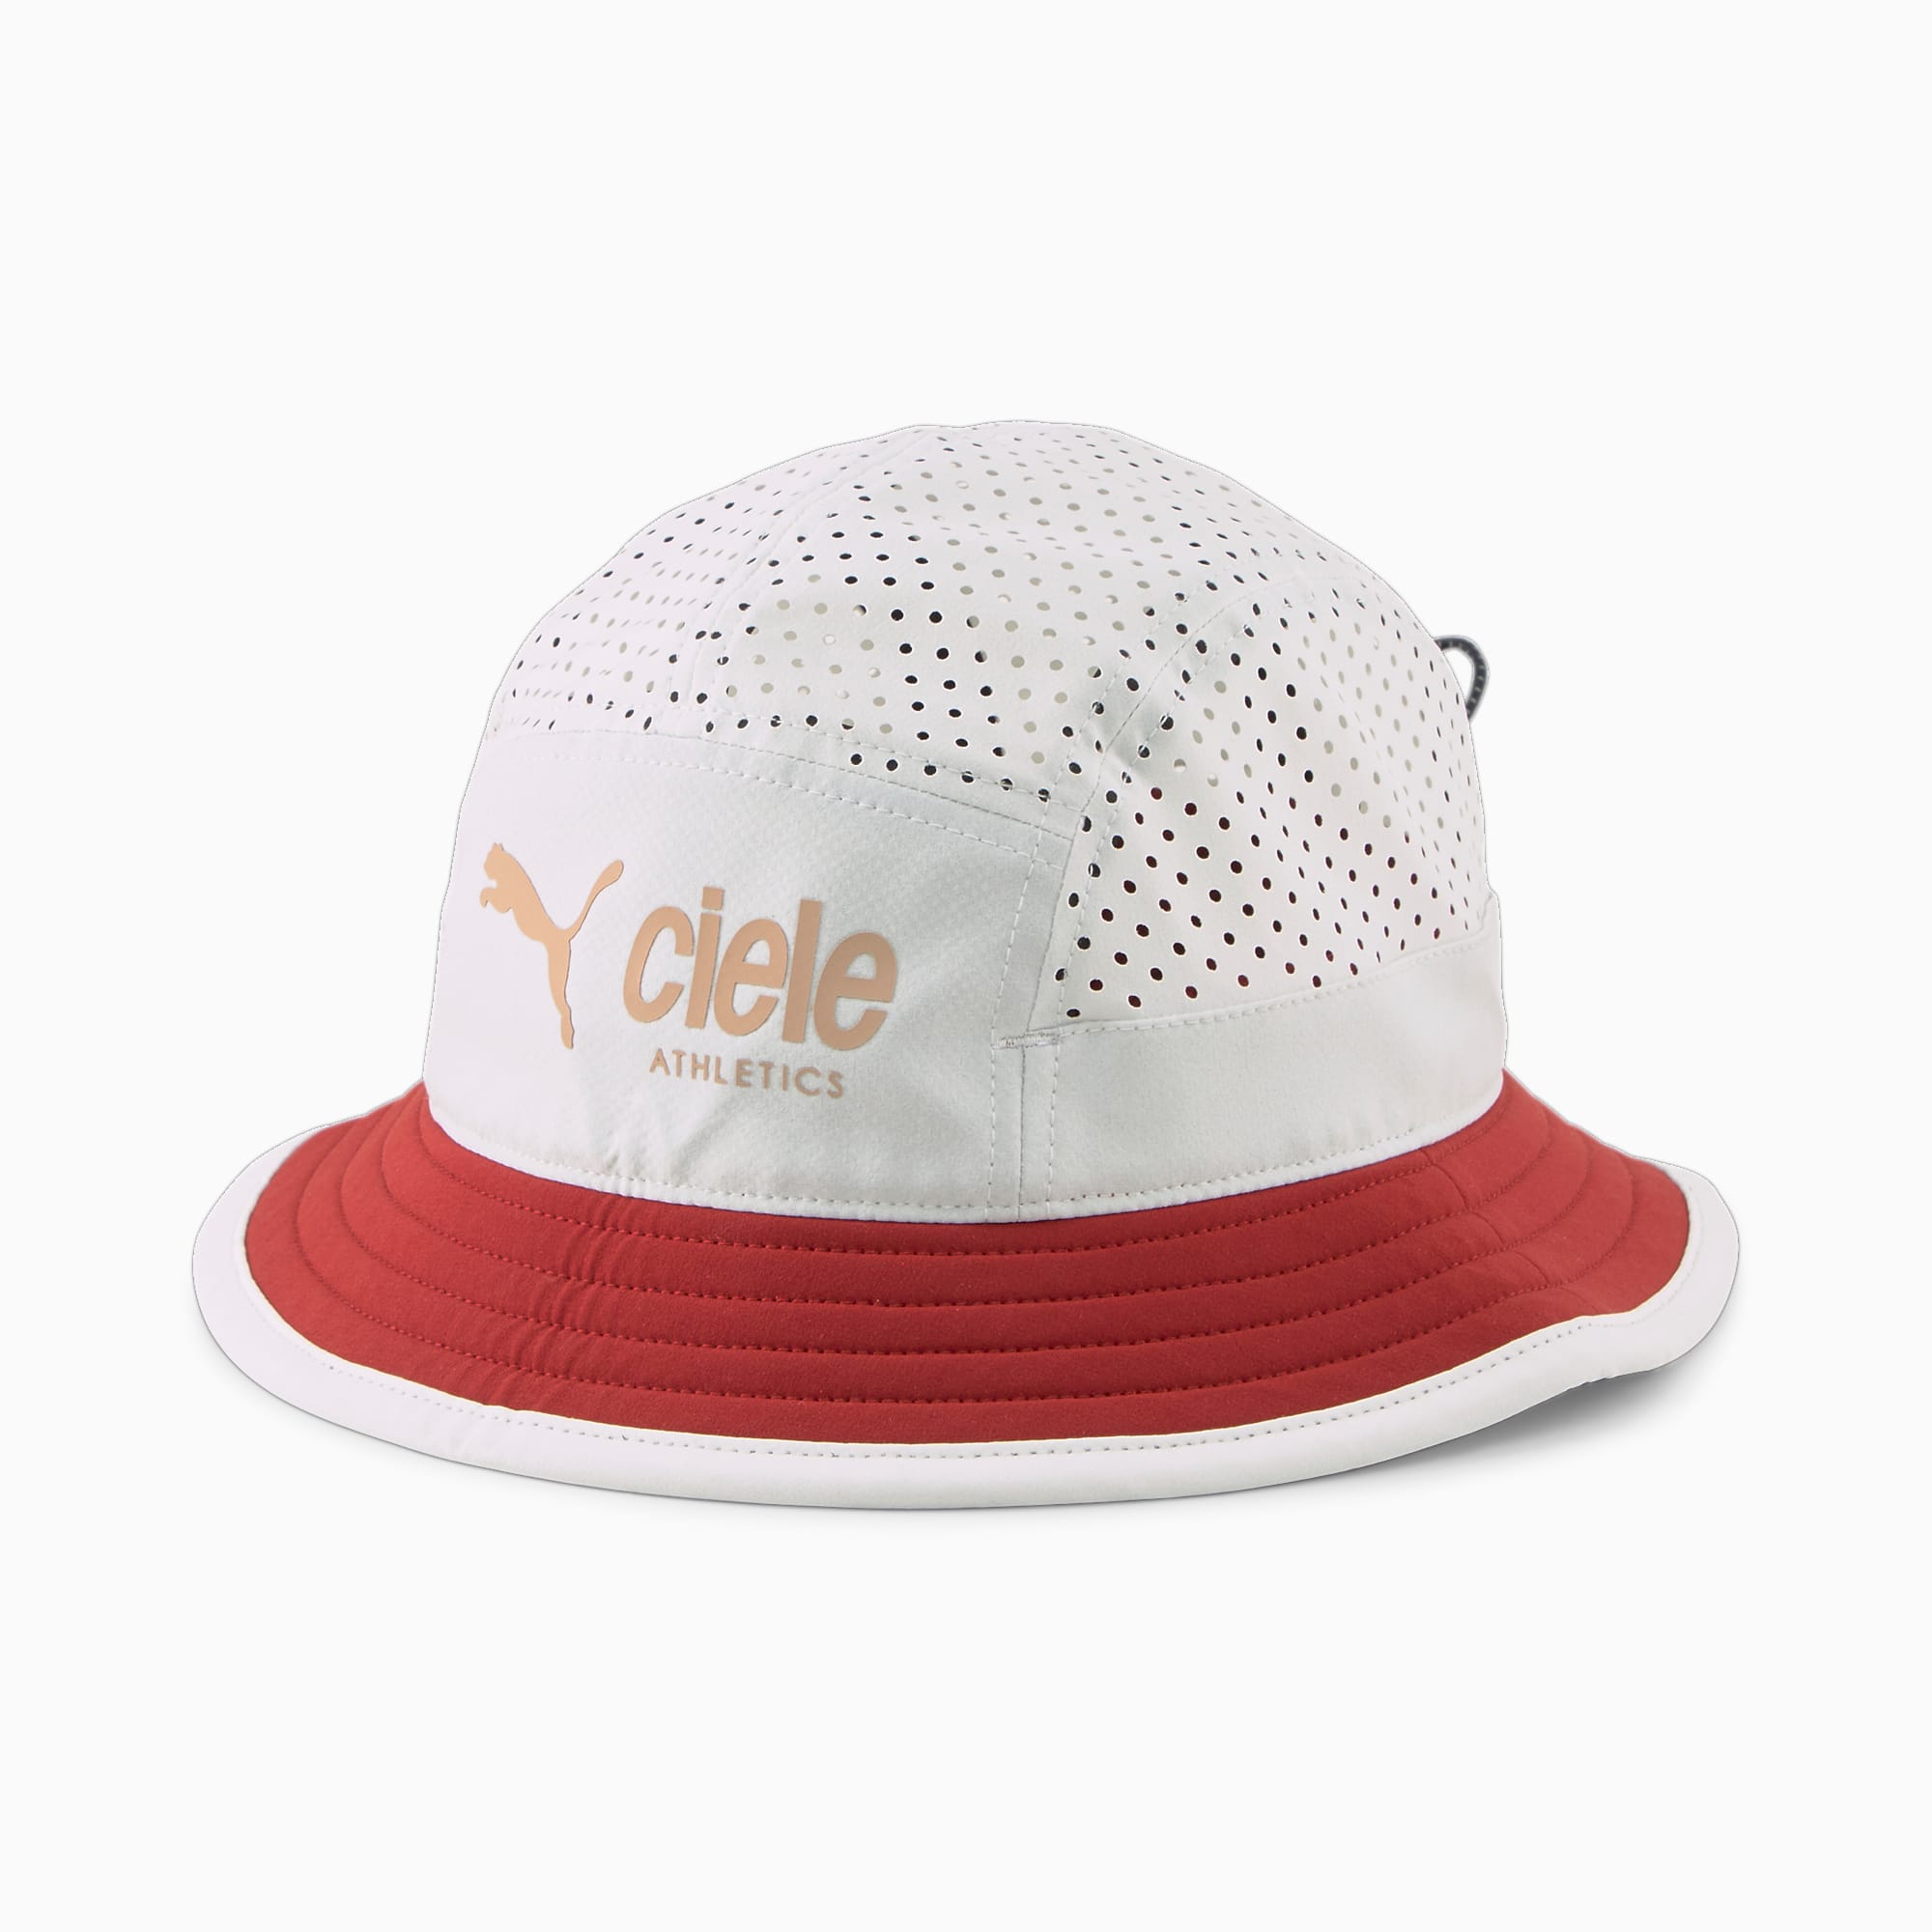 푸마 x 씨엘르(CIELE) 버킷햇 Bucket Hat Ciele X Puma | Brown-Red | 푸마 Shoes | 푸마